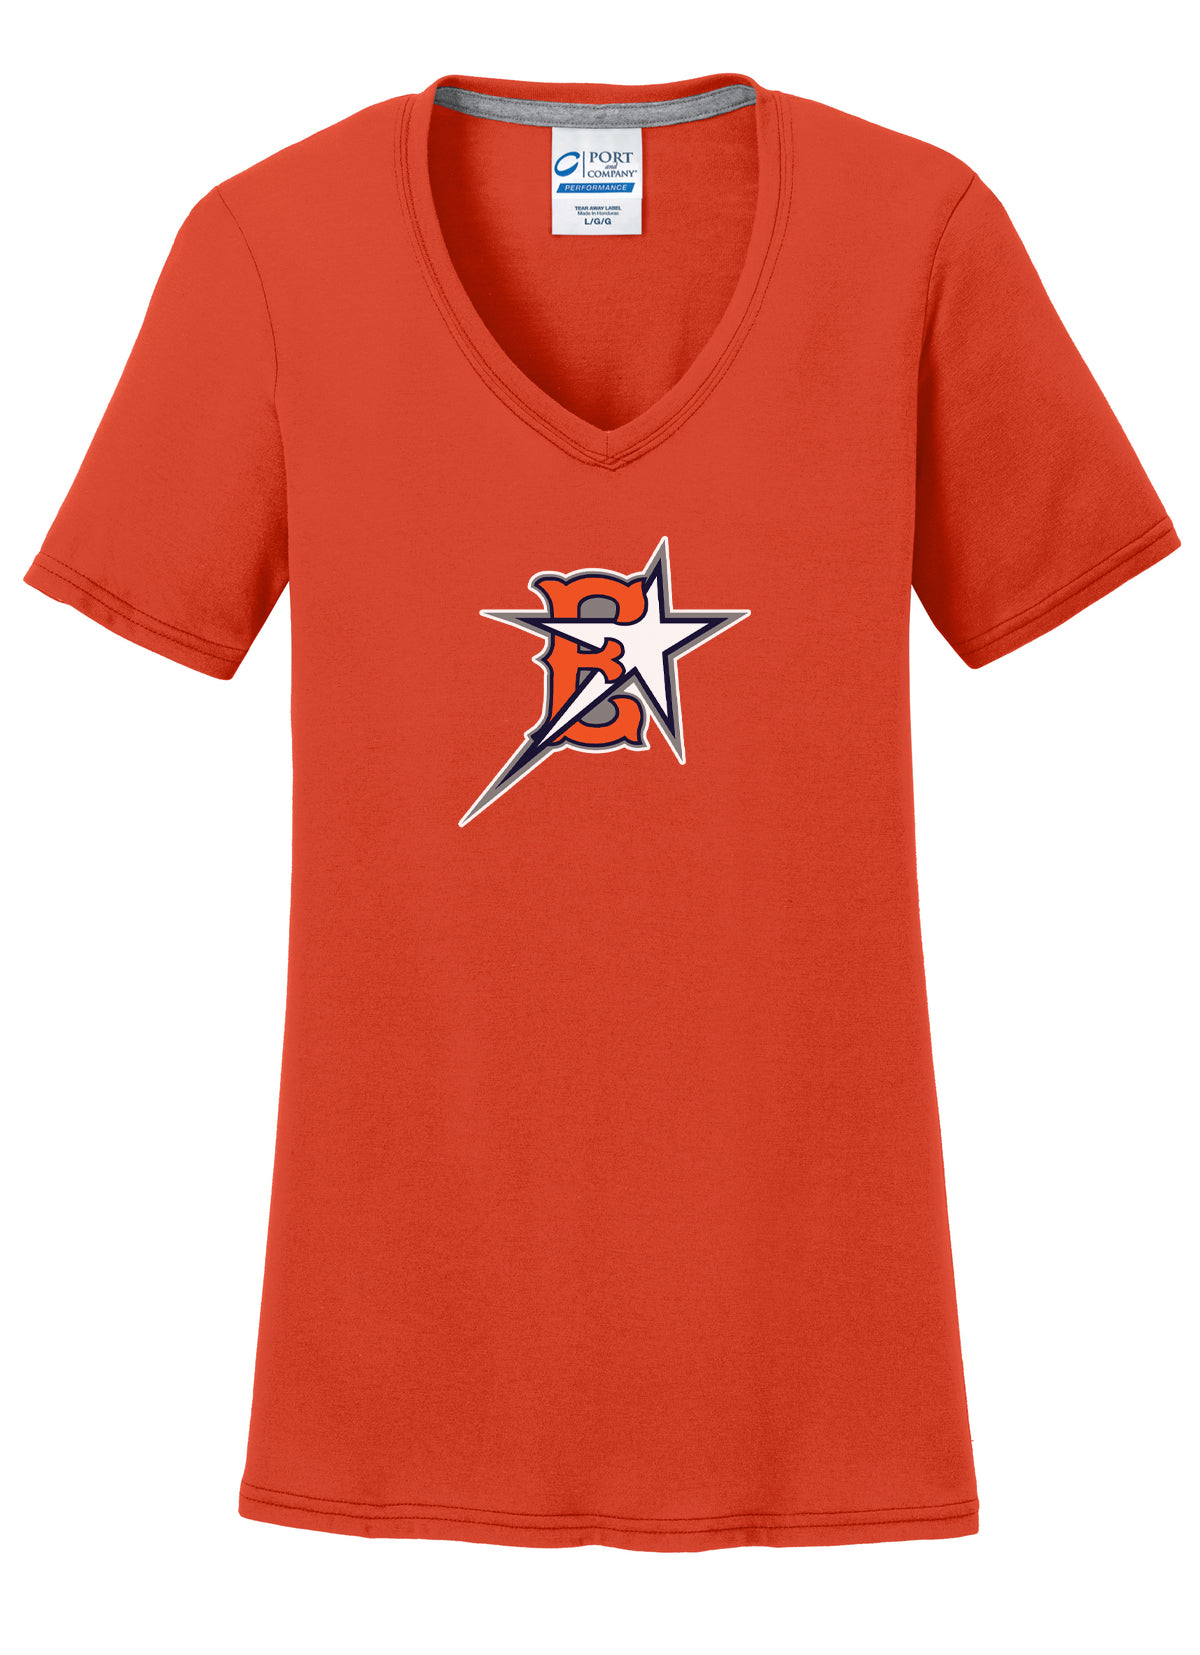 Eastvale Girl's Softball Women's T-Shirt